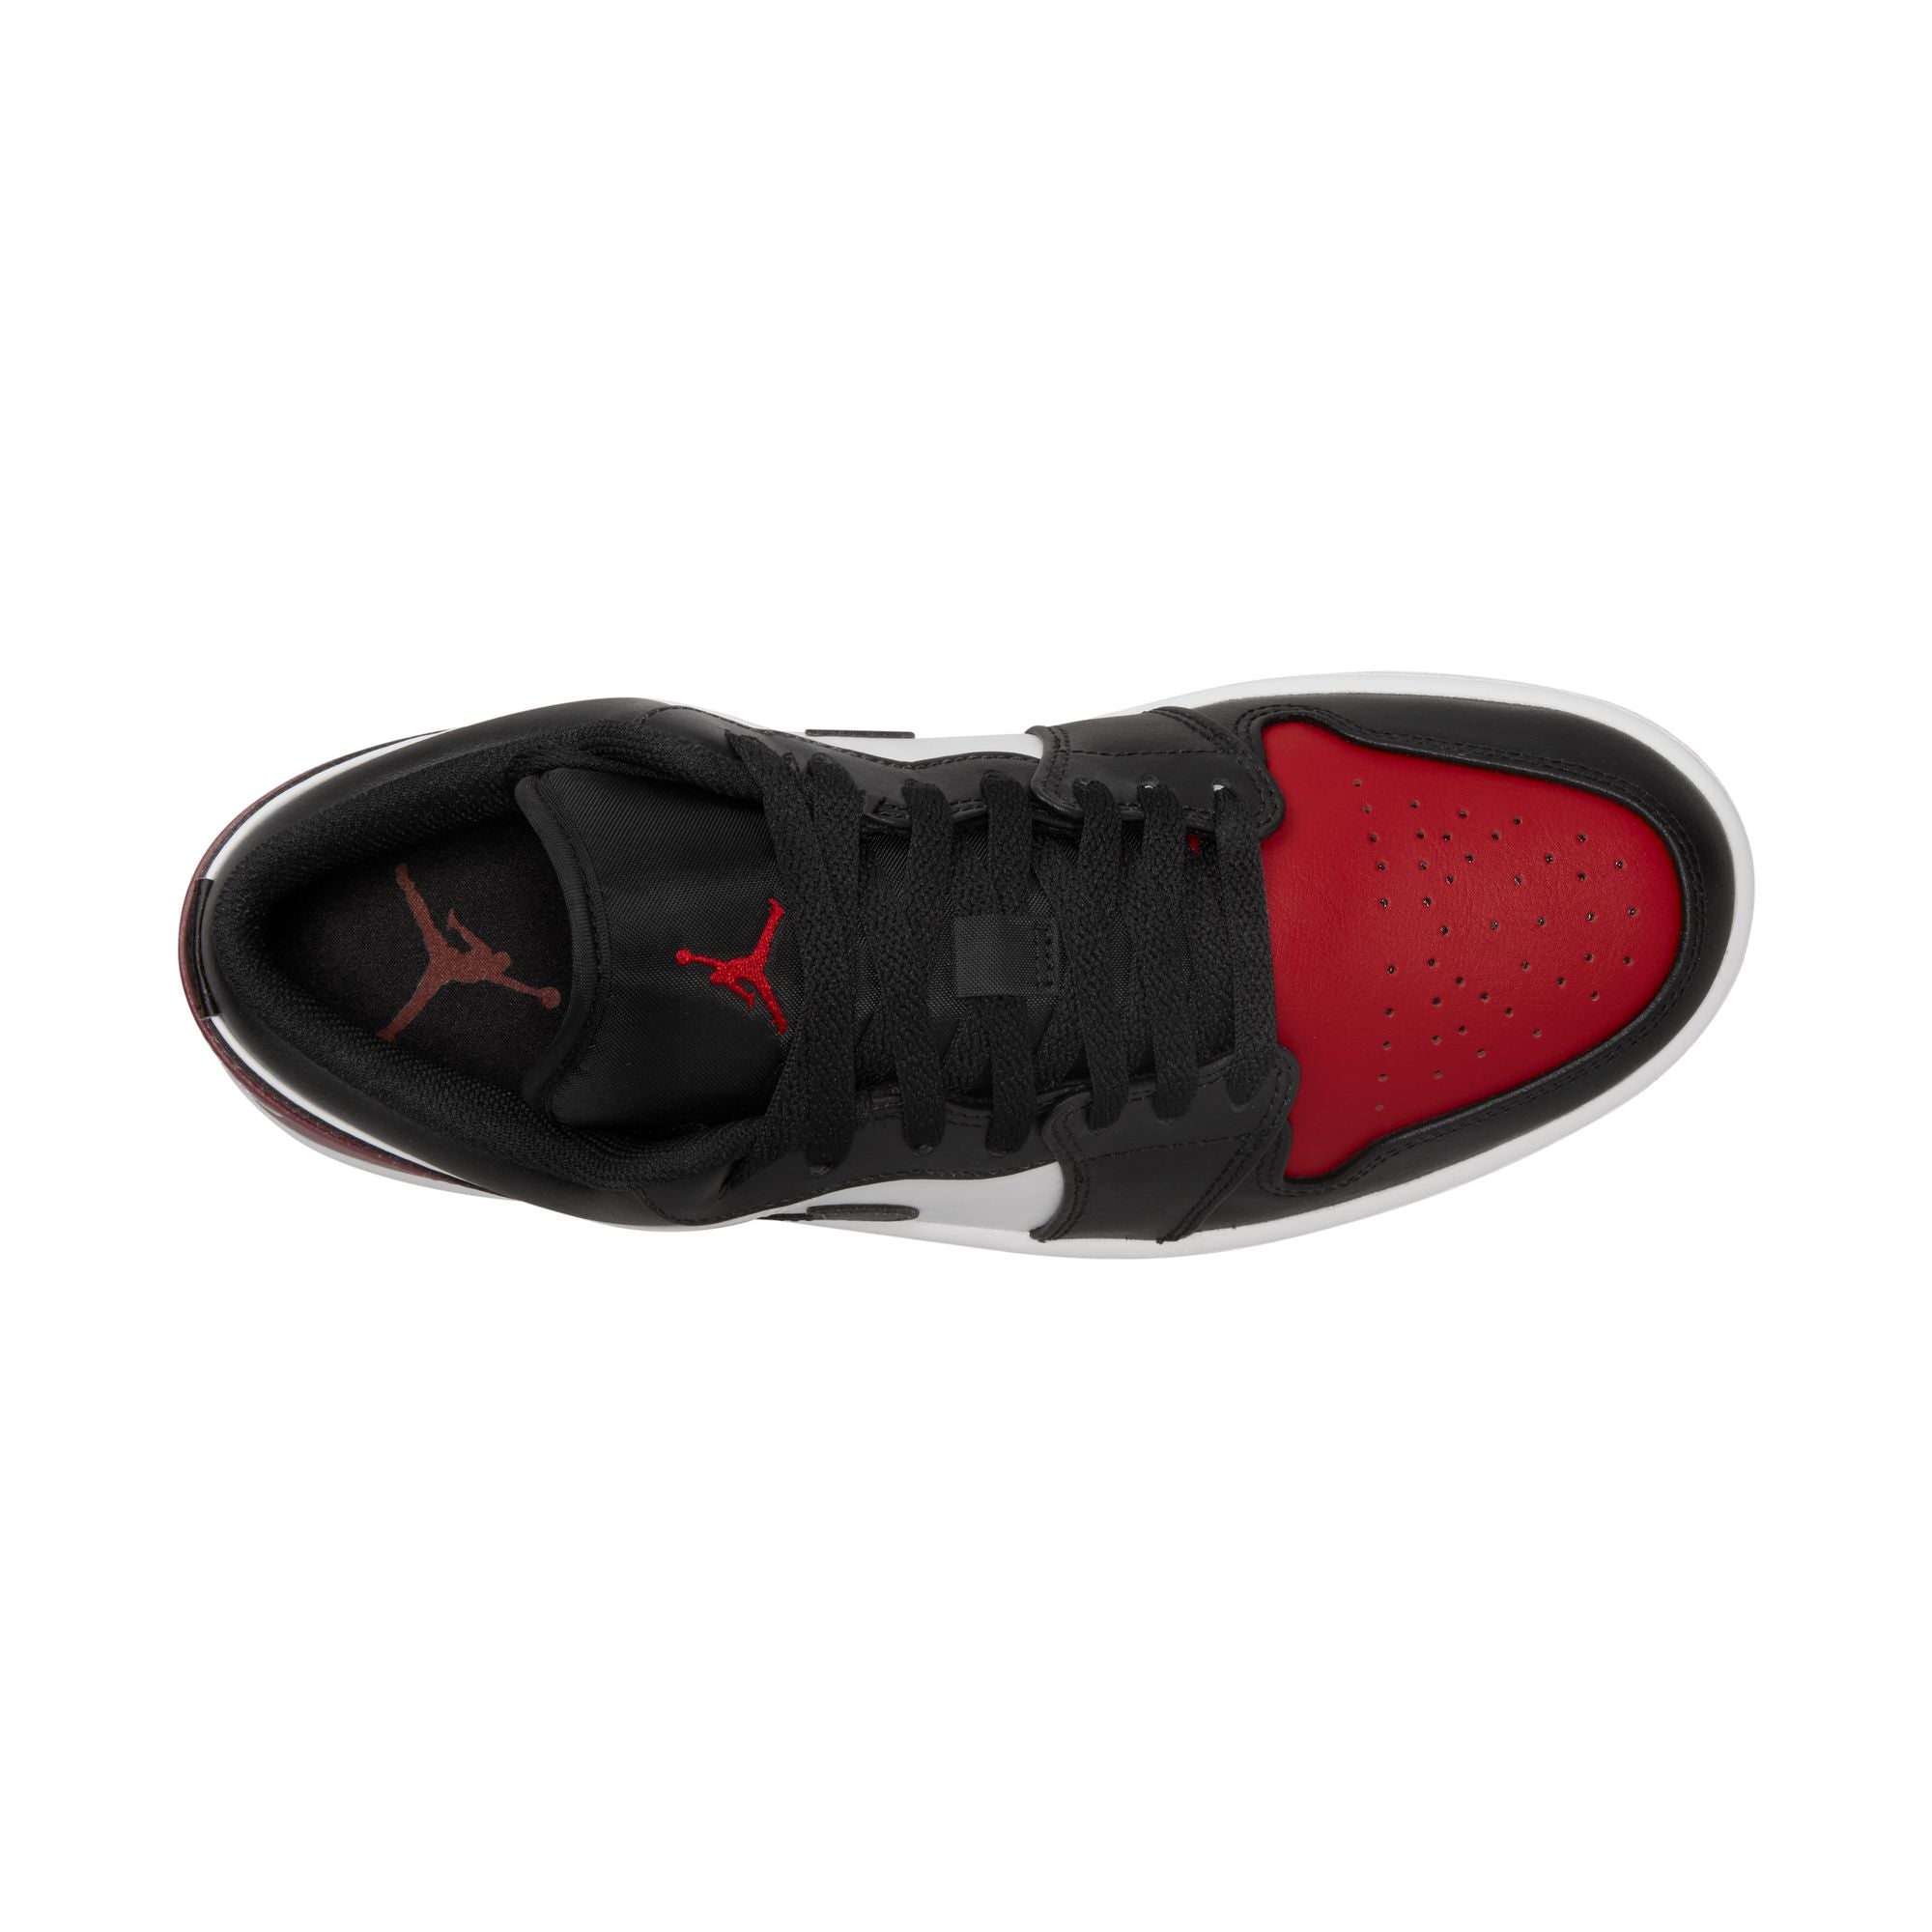 Nike Air Jordan 1 Retro Low Bred Toe